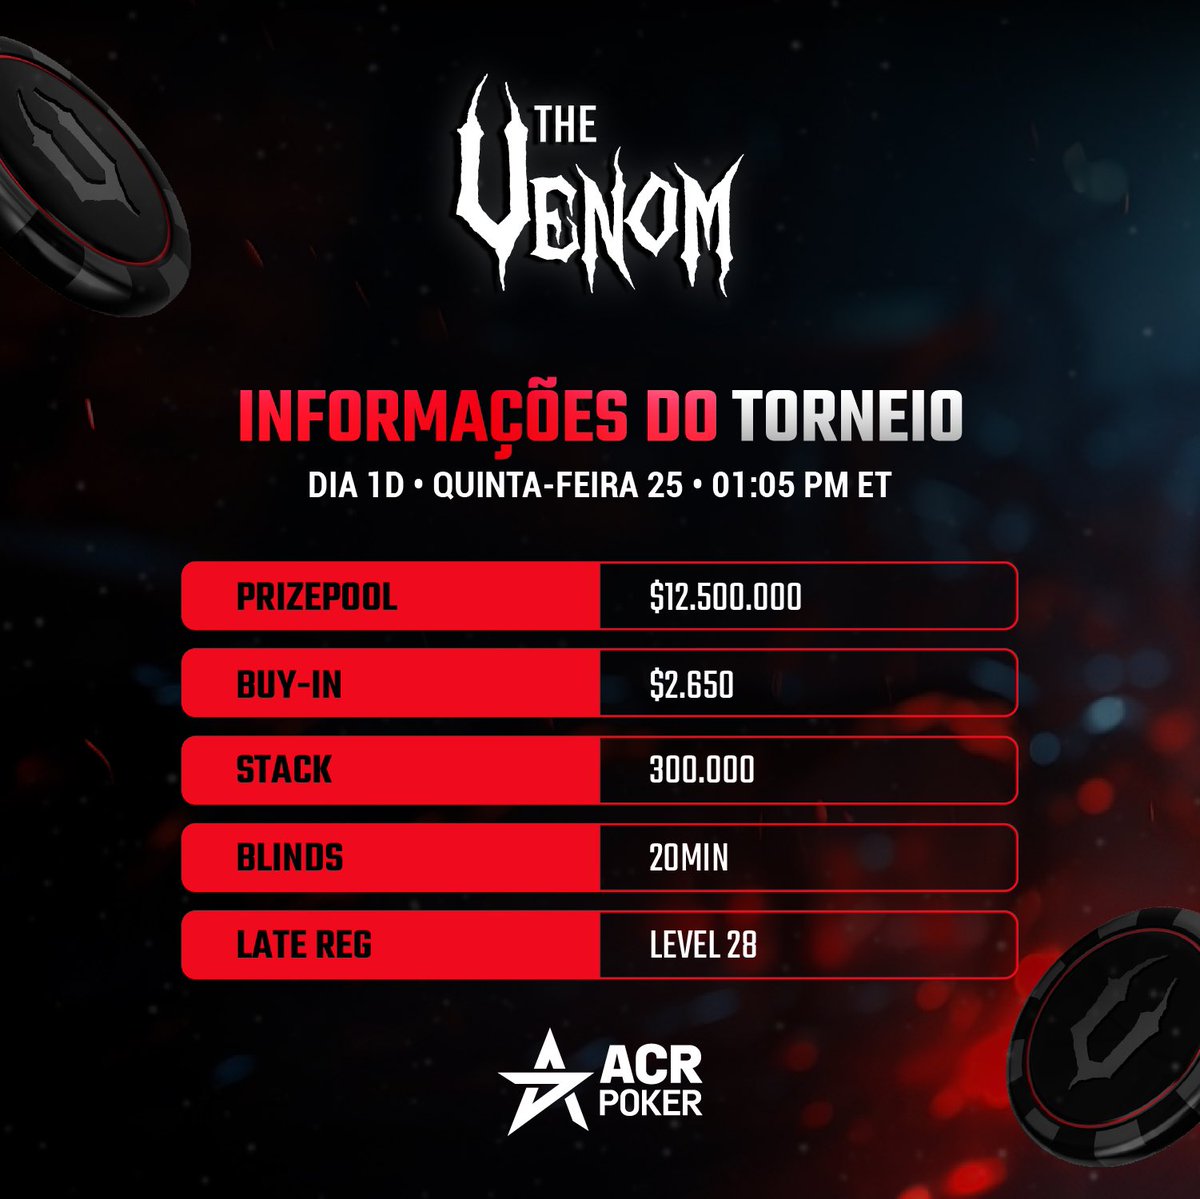 📣 ROUND #4

O Dia 1D já começou • The Venom com US$12.5000.000 GTD 

🤩👉 acrpoker.eu/pt/promotions/…

____
#ACRpoker #venom #venomfever #torneio